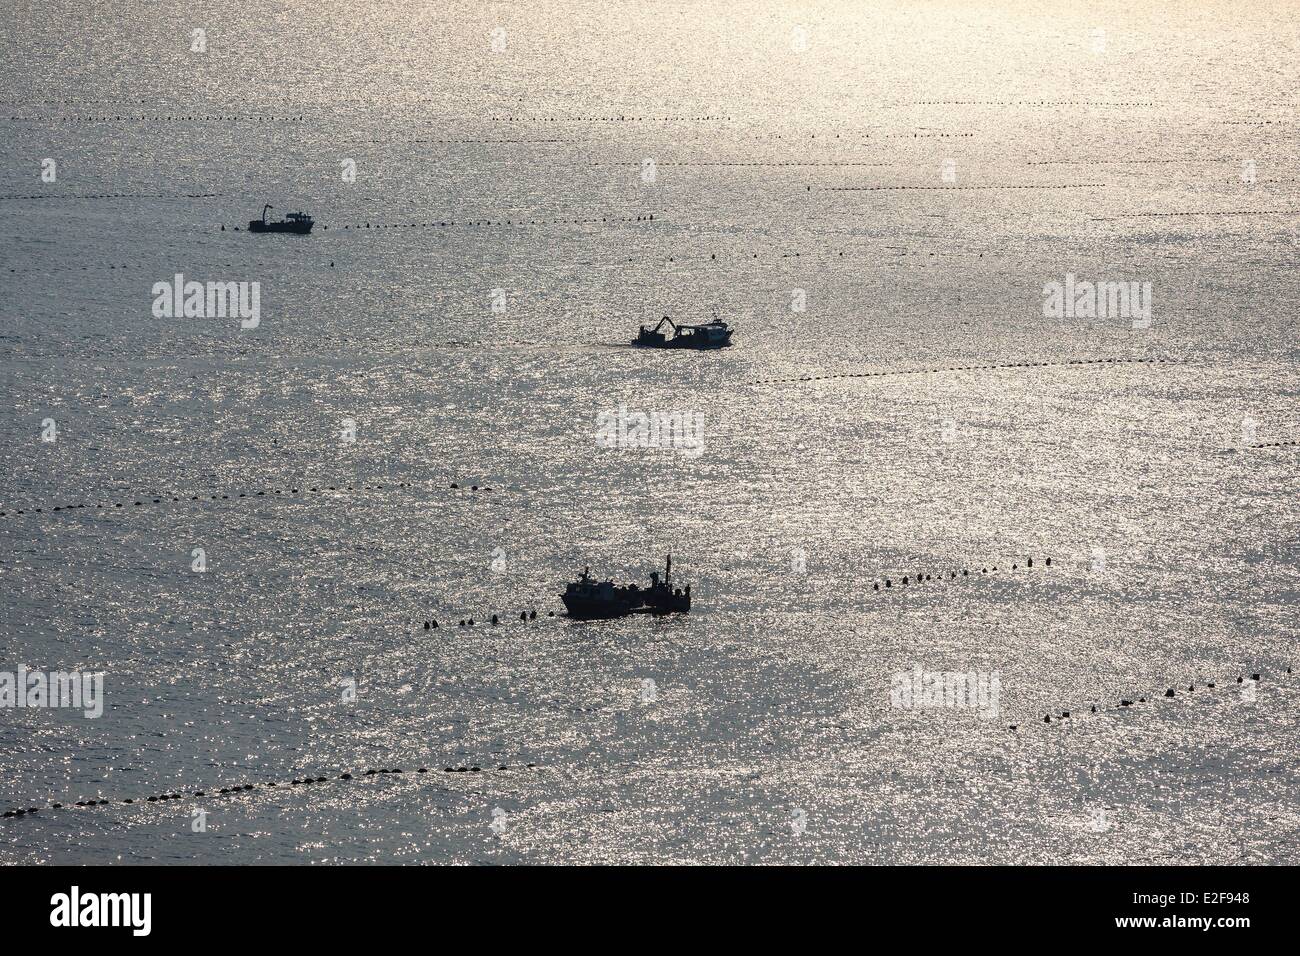 Francia, Vendée, La Faute-sur-Mer, mejillon granja barcos en las cuerdas de terreno (vista aérea) Foto de stock